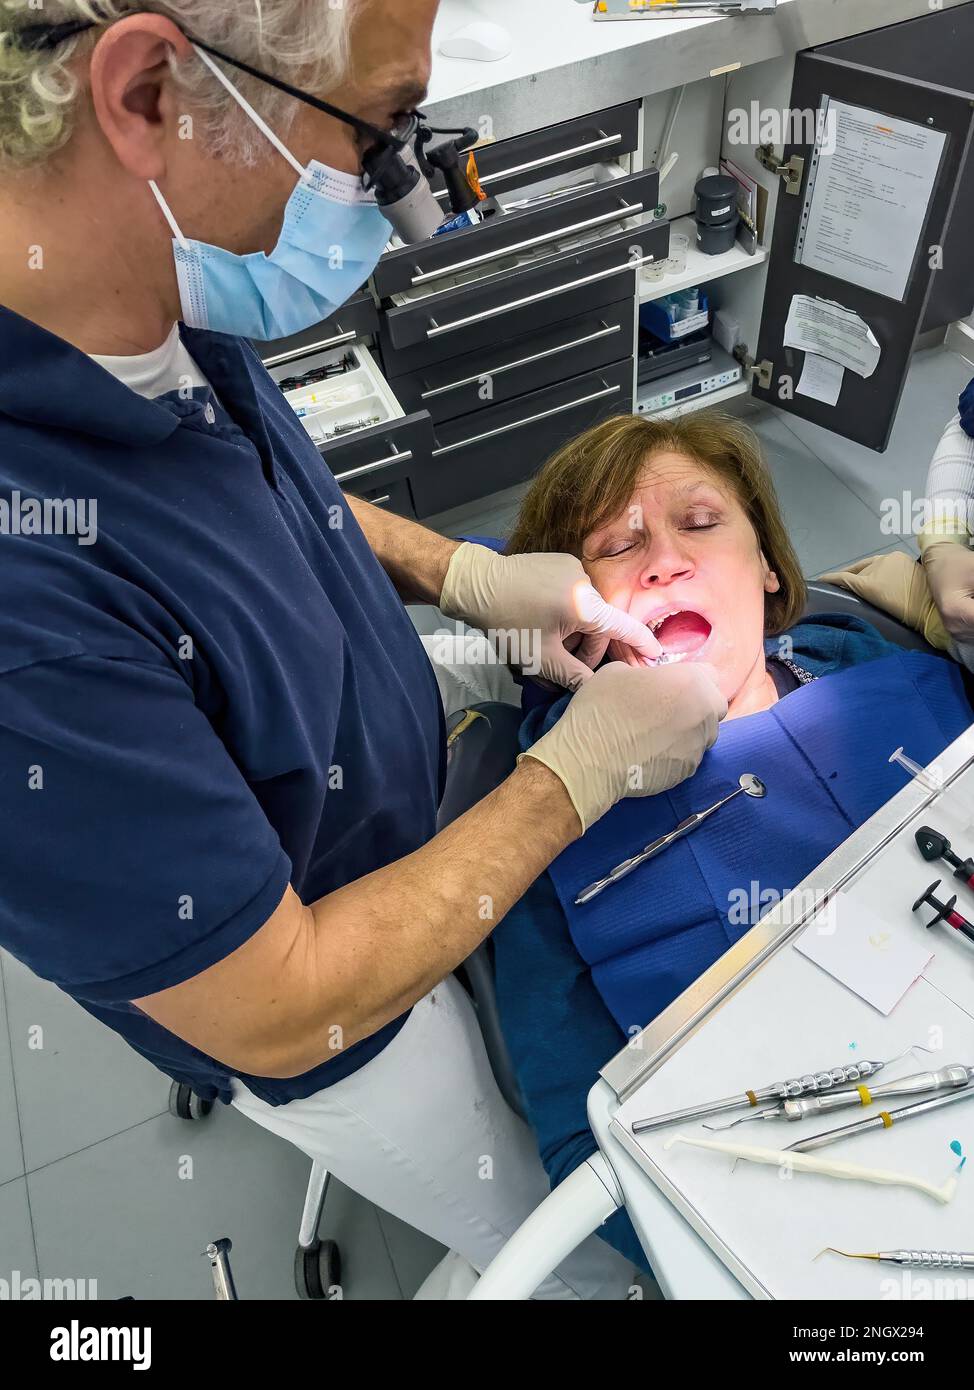 Le dentiste examine les patients dentition la prophylaxie dentaire effectue un traitement dentaire caries, Allemagne Banque D'Images